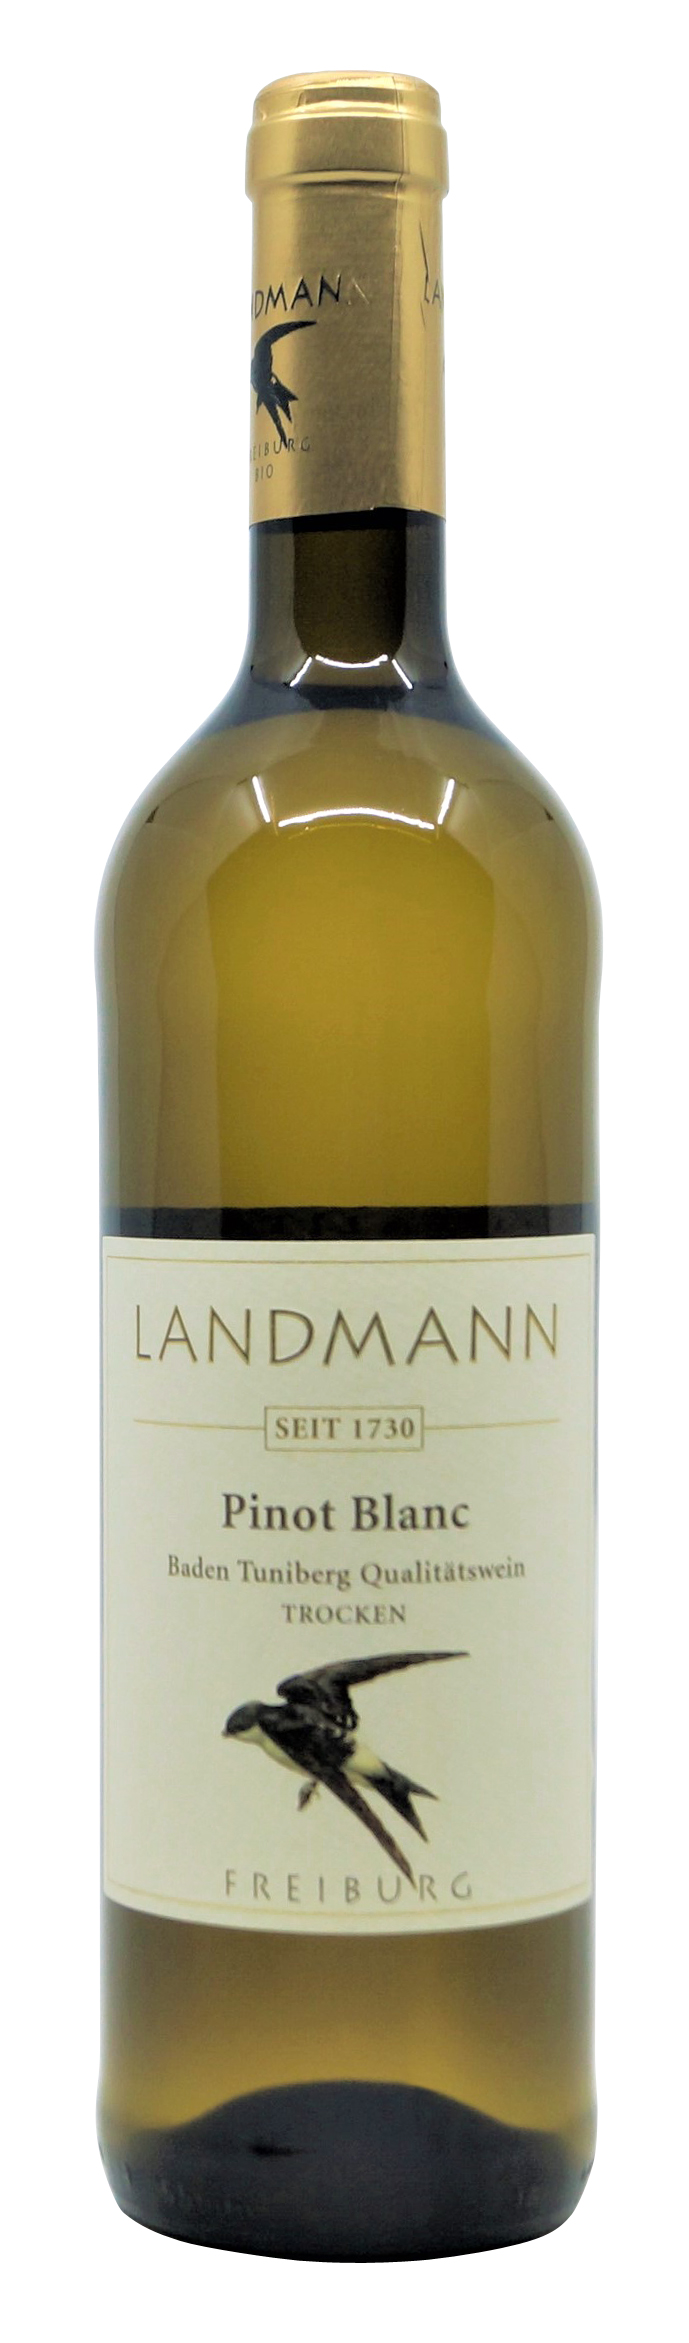 2019er Pinot Blanc trocken vom Weingut Landmann aus Waltershofen, 0,75 l Flasche ( 13,20 €/ Liter)